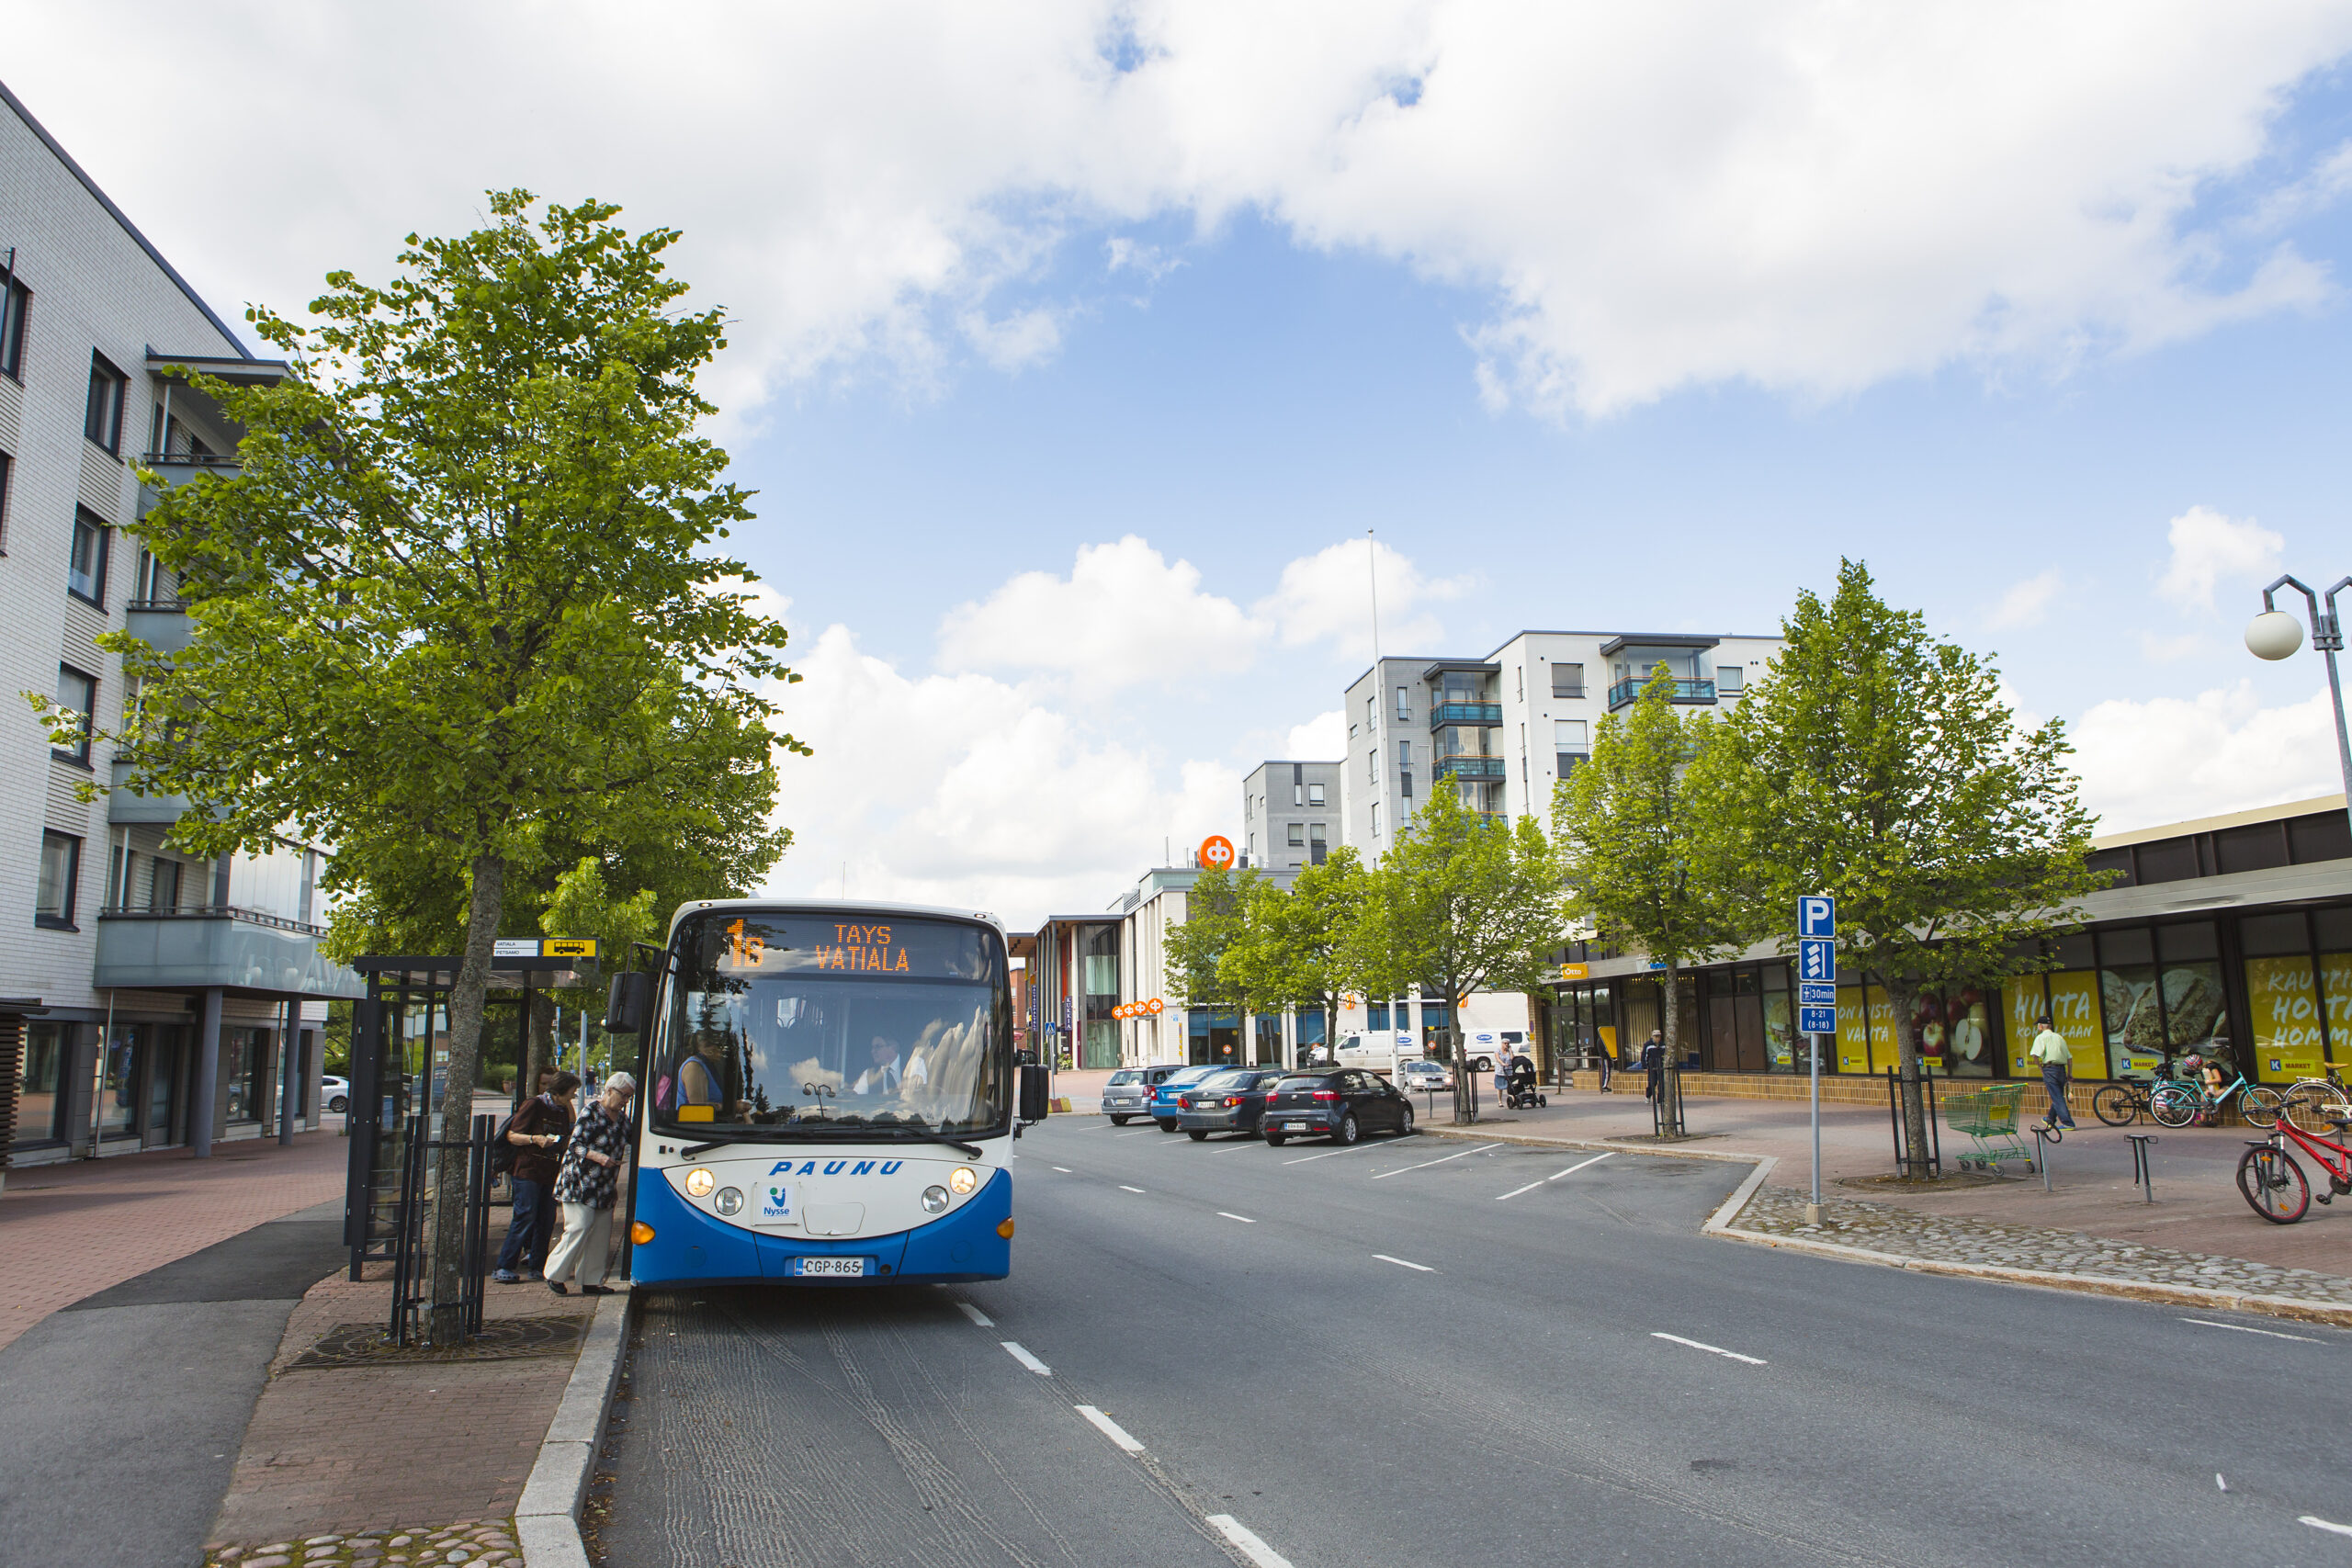 Tampereen joukkoliikenteen bussi Suupan pysäkillä.